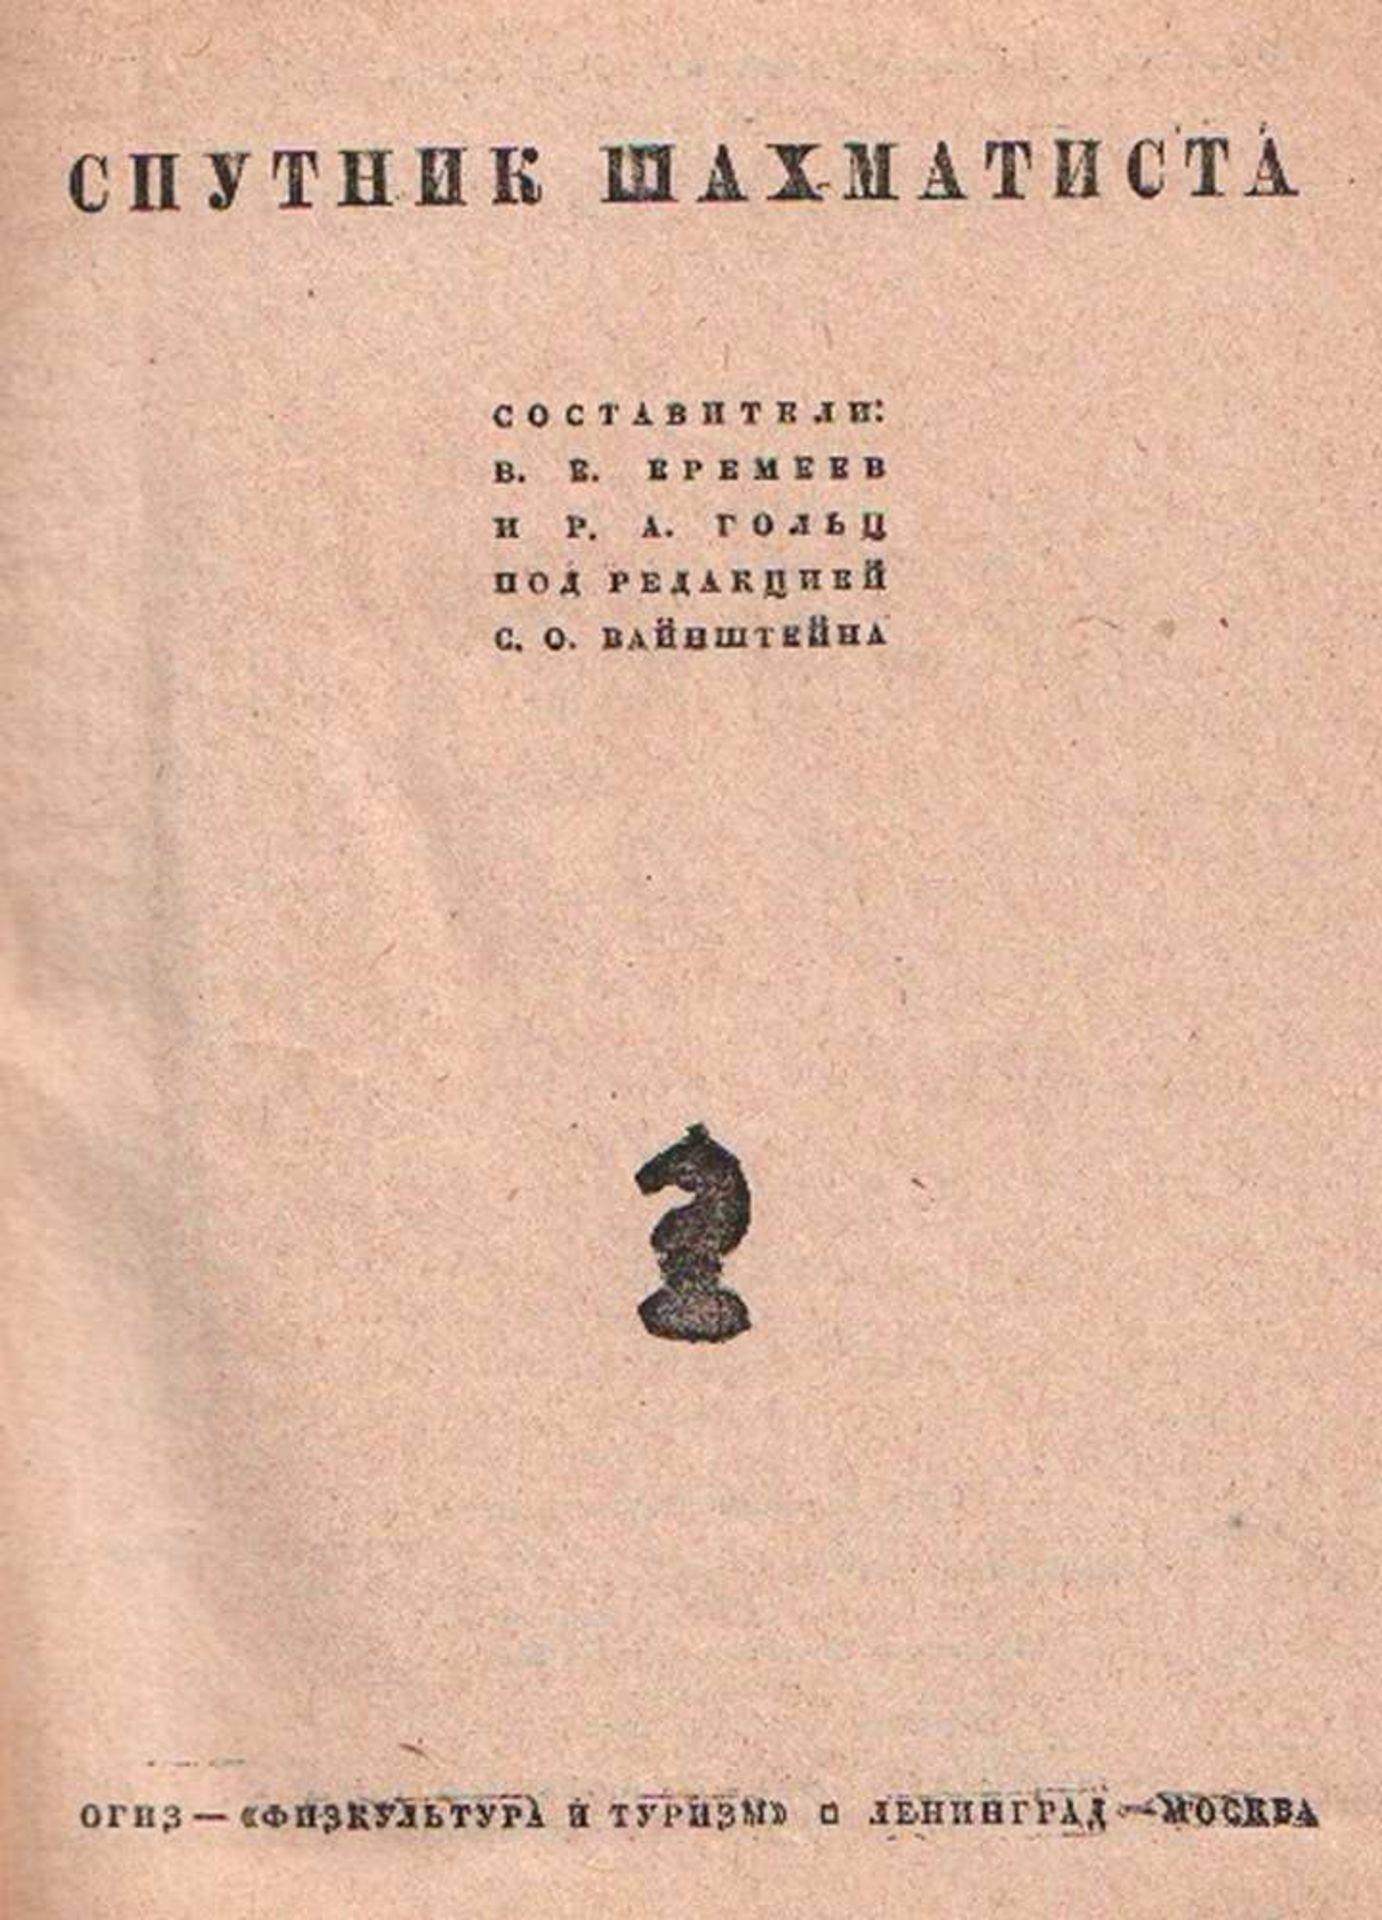 Wainstejn, S. O (Hrsg.) Sputnik Schachmatista. Sostawitel: W. E. Eremeew, I. R. A. Golz. Moskau